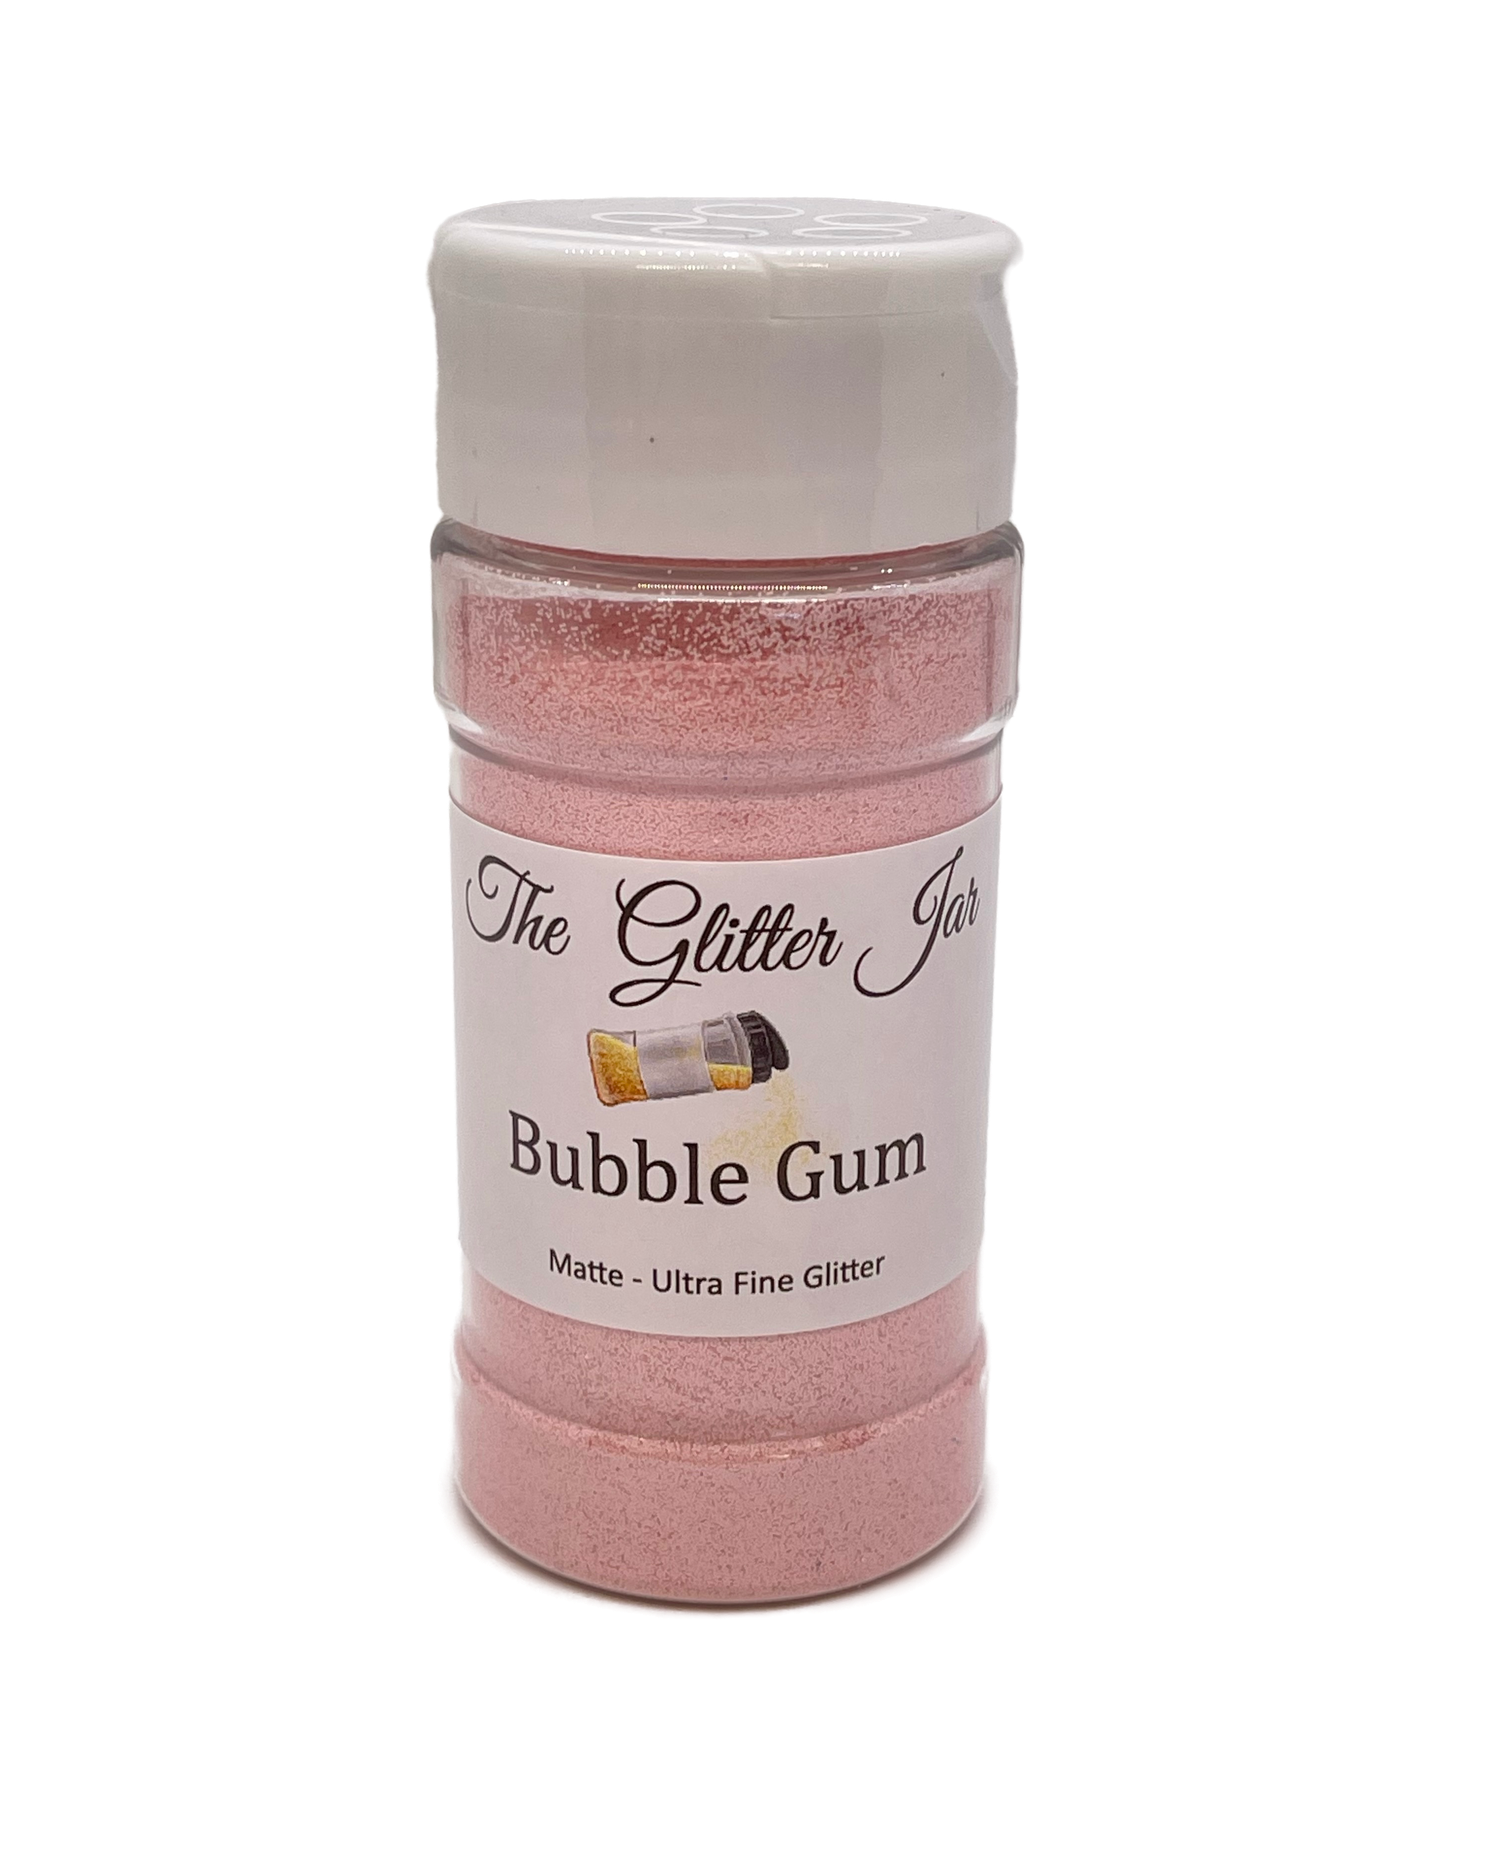 Bubble Gum Cosmetic Grade  Glitter The Glitter Jar